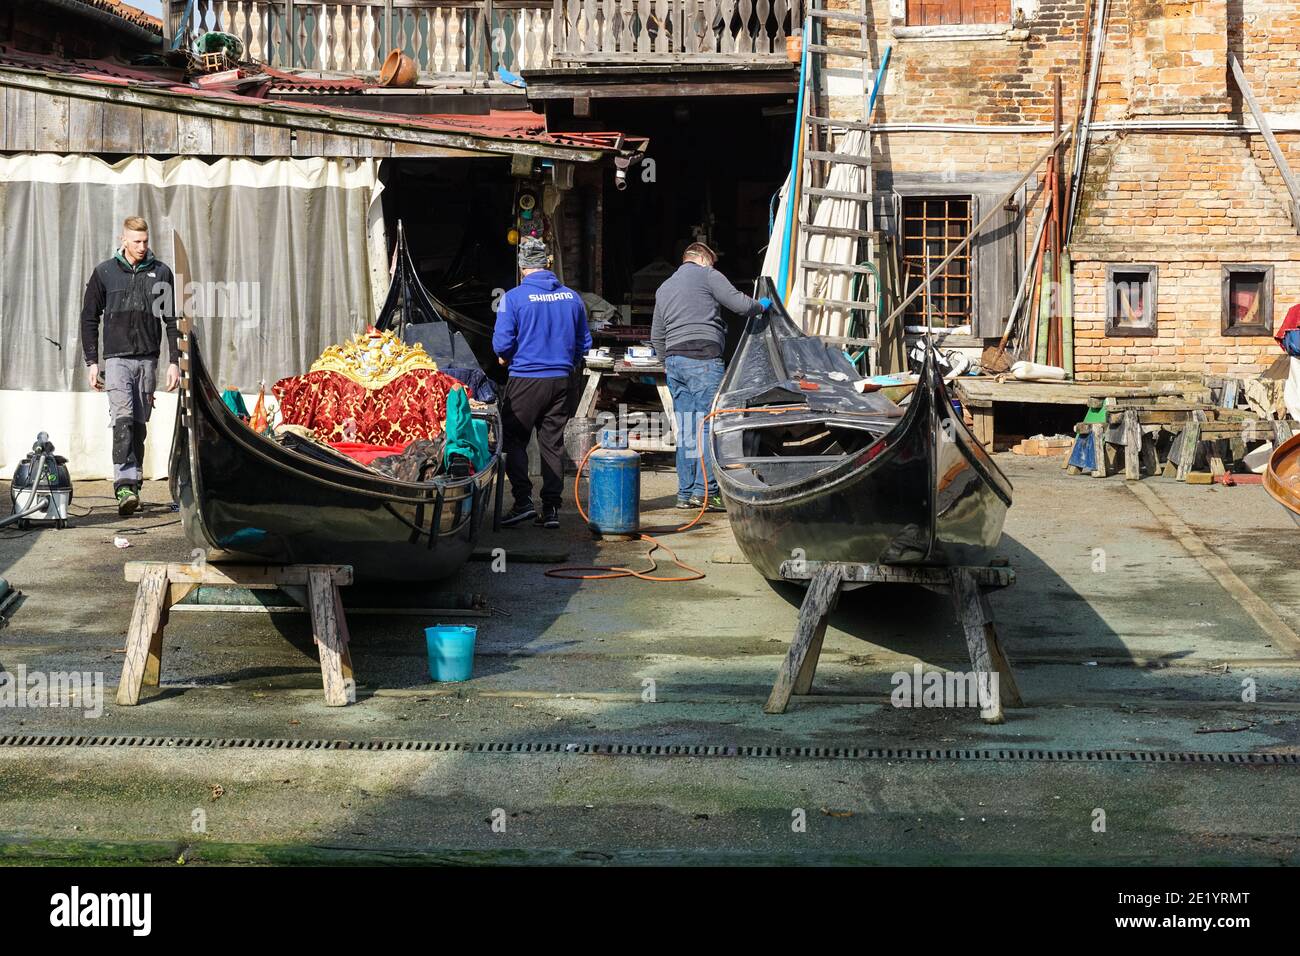 Squero di San Trovaso traditional boatyard making gondolas in the sestiere of Dorsoduro, Venice, Italy Stock Photo